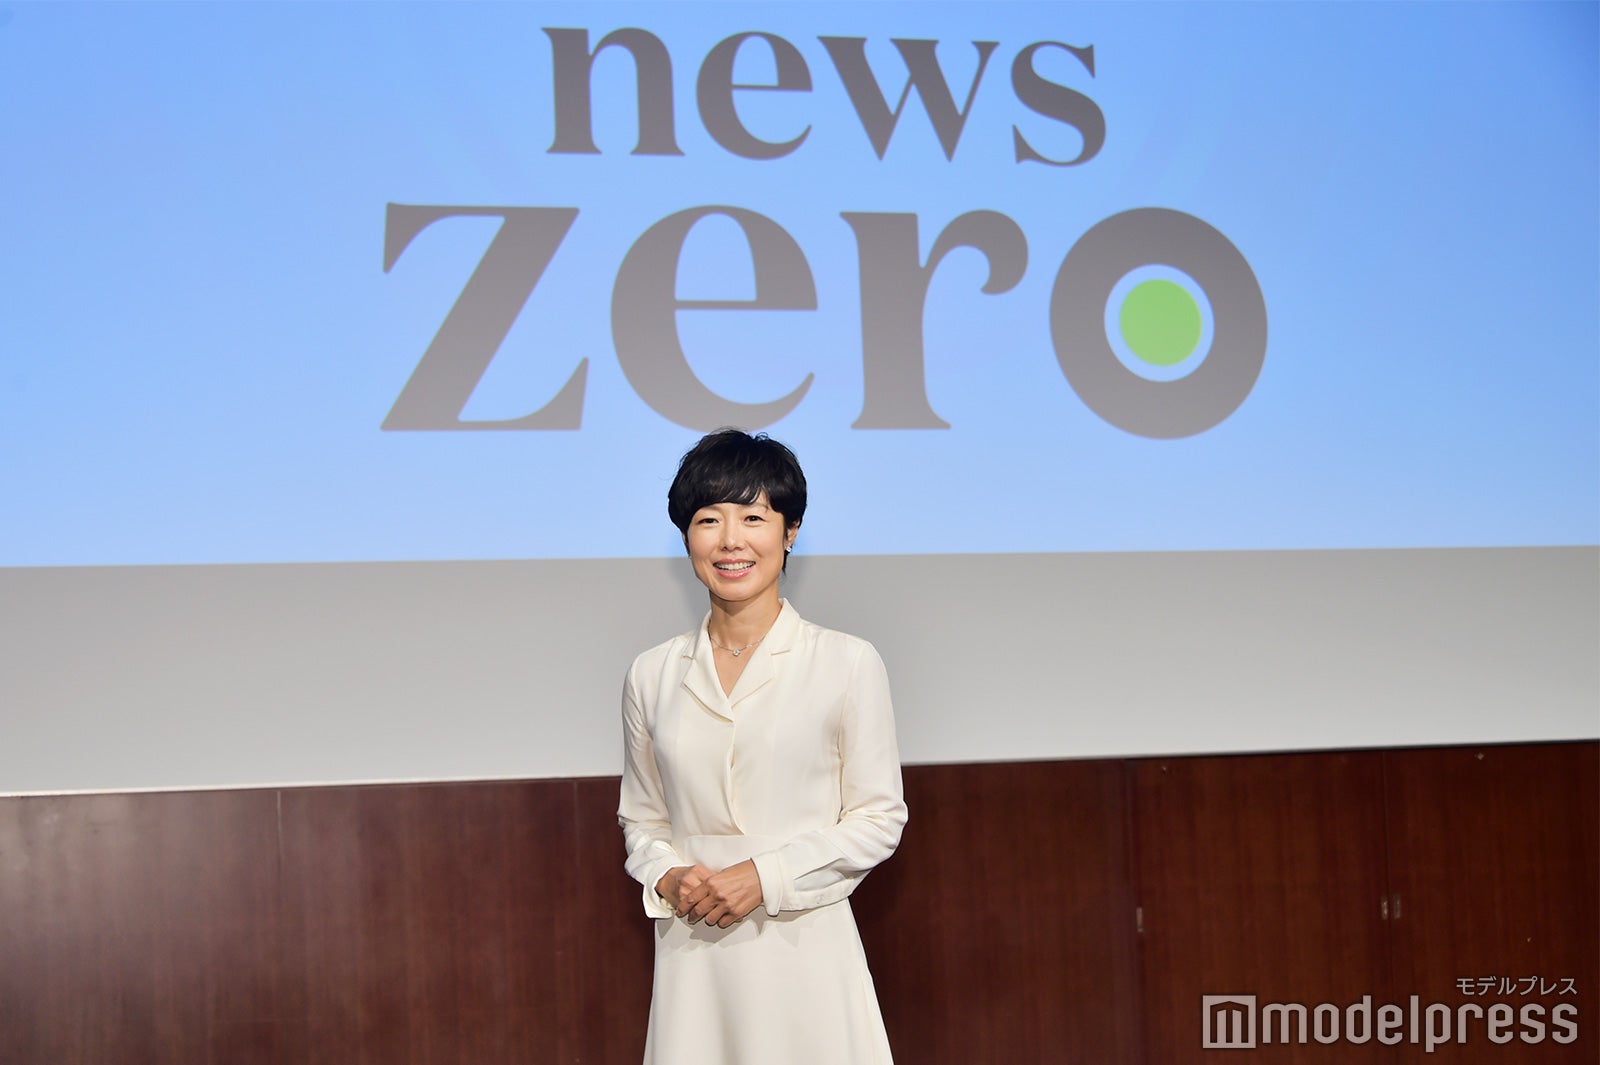 嵐・櫻井翔、新「news zero」で有働由美子アナとタッグ “13年目